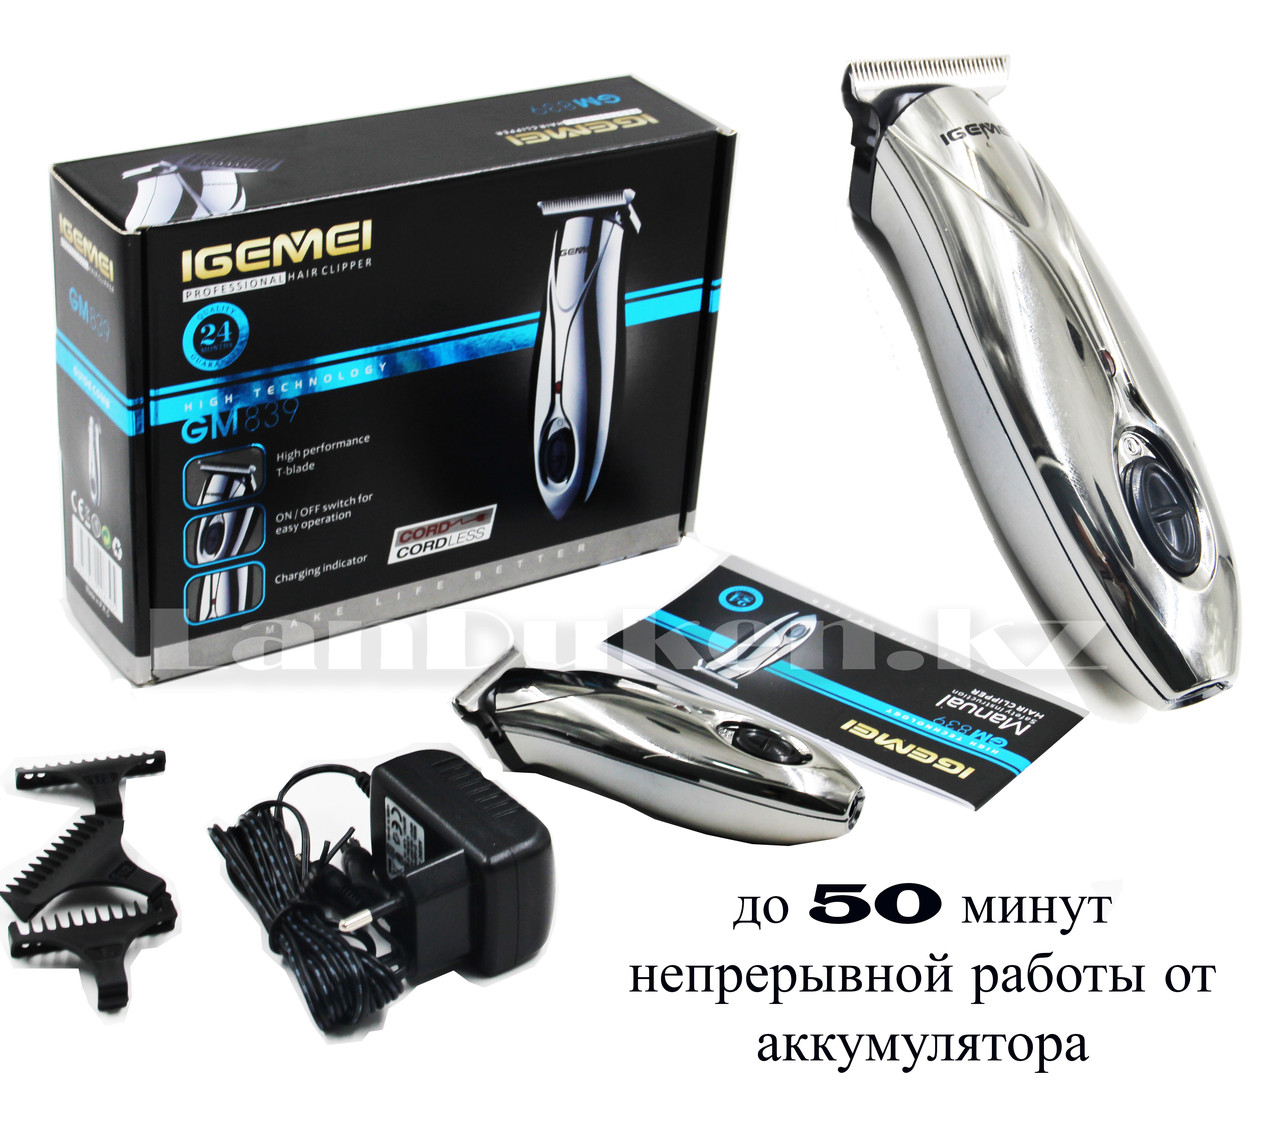 Профессиональная машинка для стрижки волос IGemei GM839 с насадками (аккумулятор и сеть)